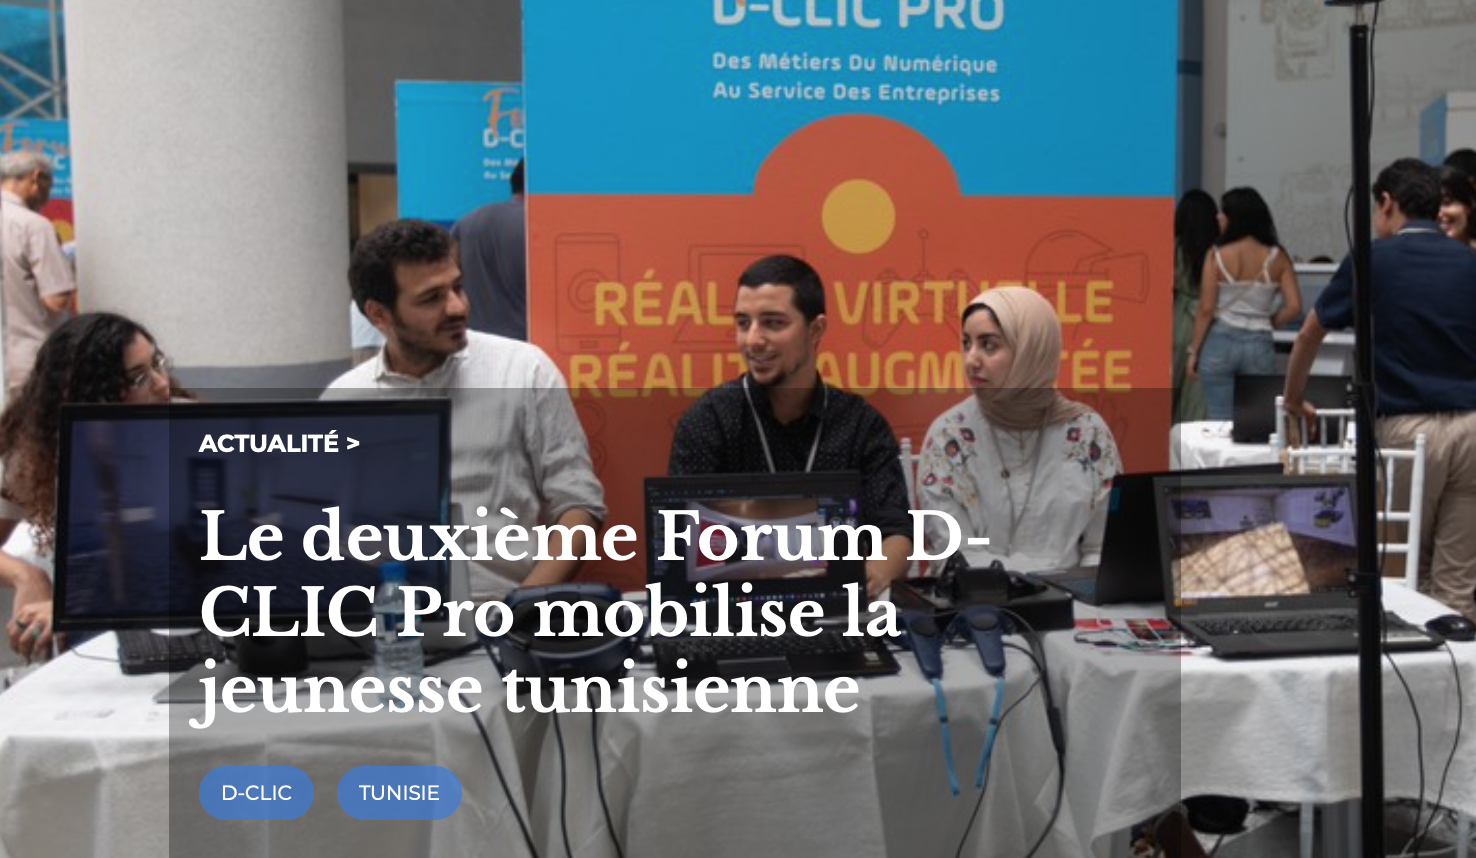 Le deuxième Forum D-CLIC Pro organisé par l’OIF mobilise la jeunesse tunisienne